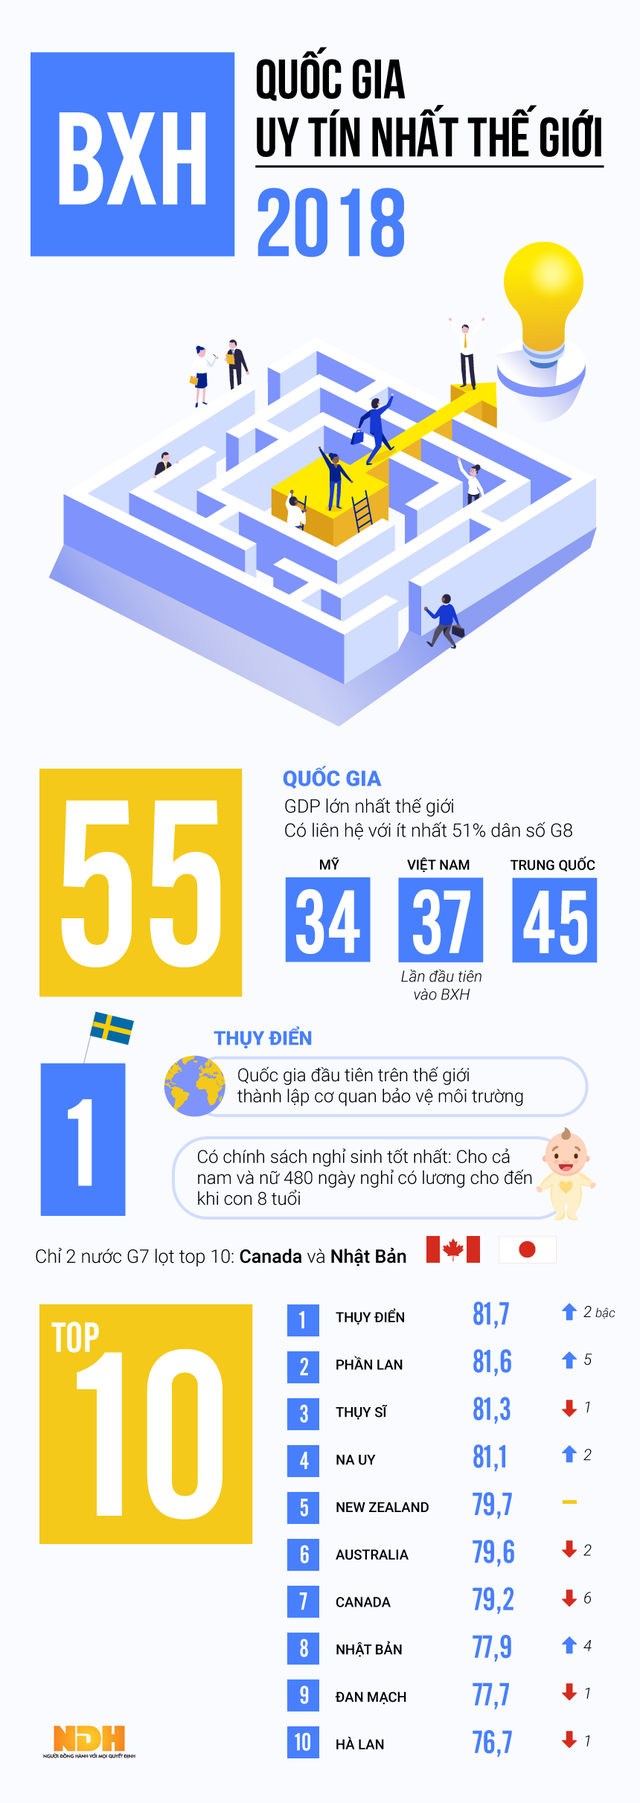 [Infographic] Việt Nam nằm trong nhóm 55 quốc gia uy tín nhất thế giới 2018 - Ảnh 1.